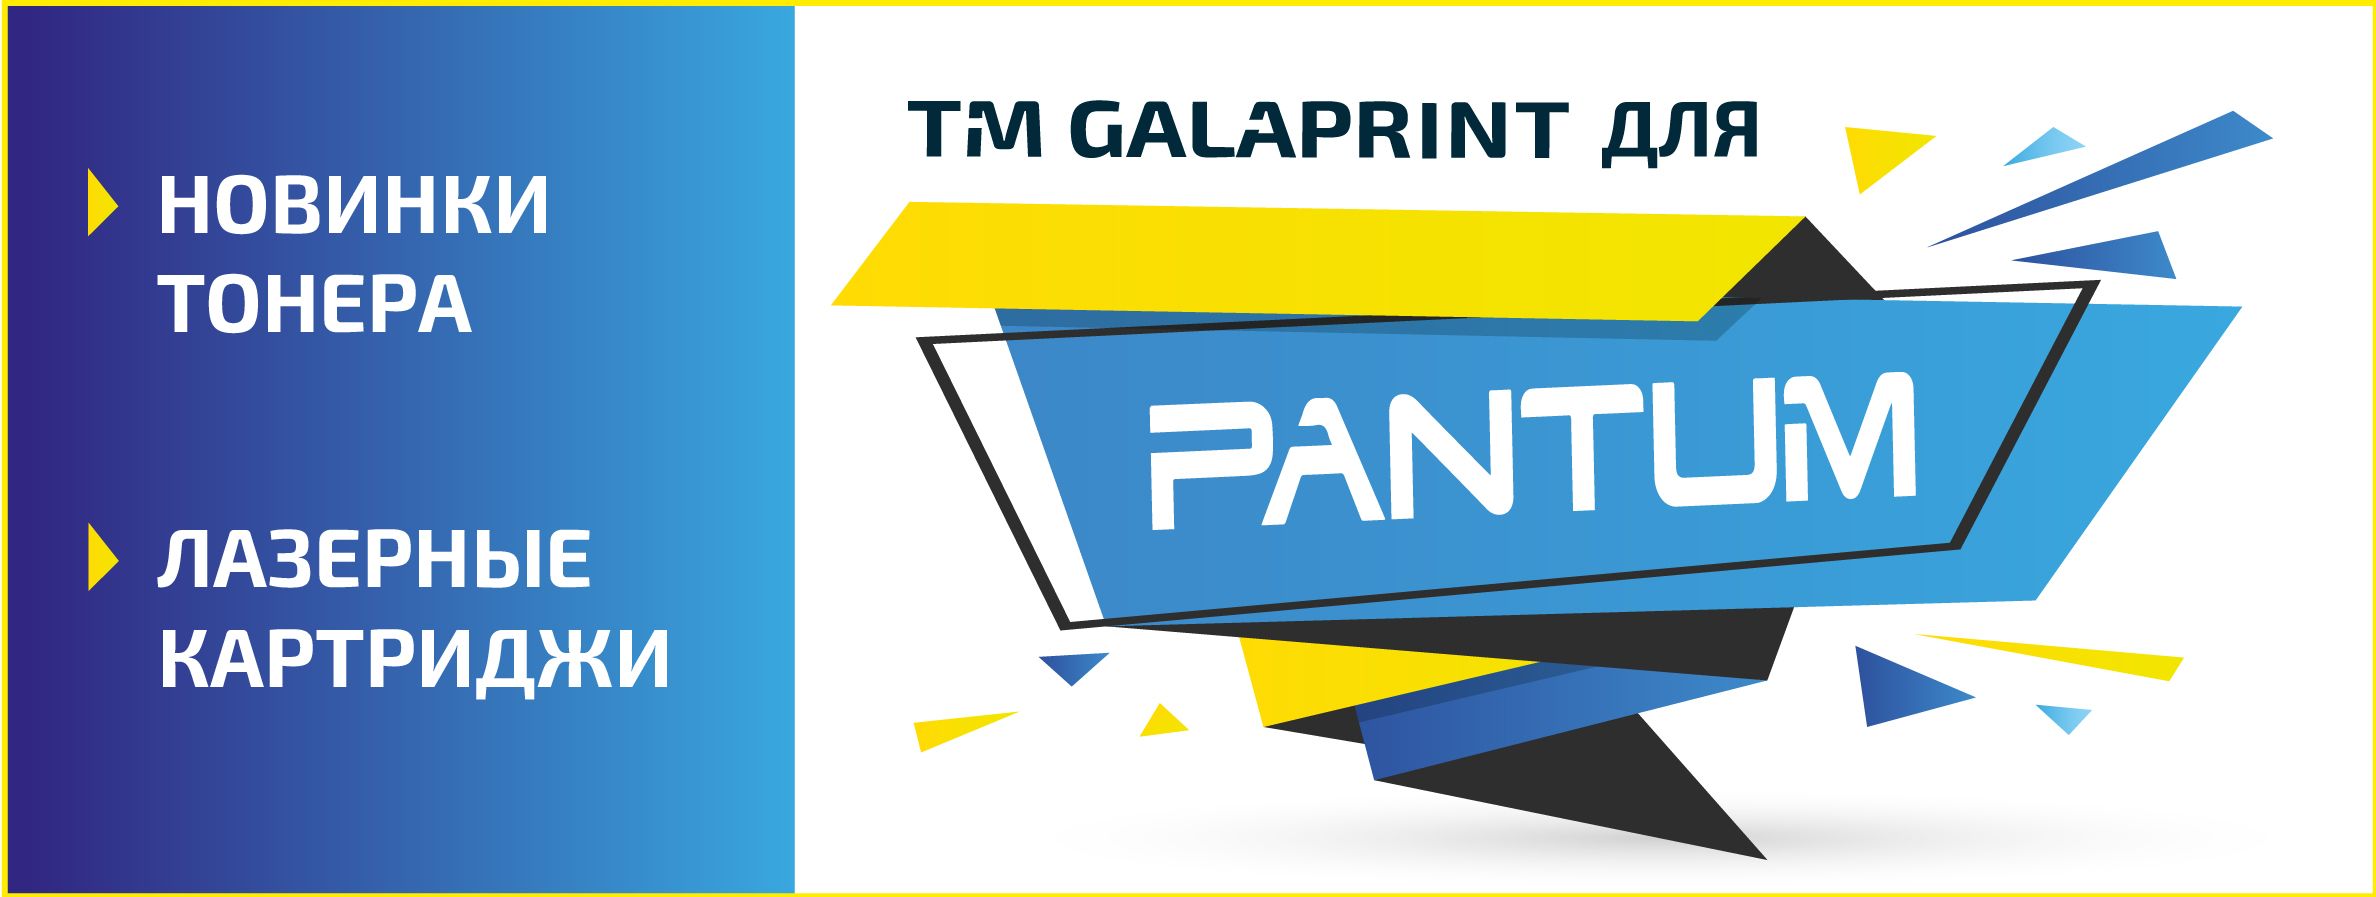 Актуальные новинки тонера Galaprint для ТМ Pantum